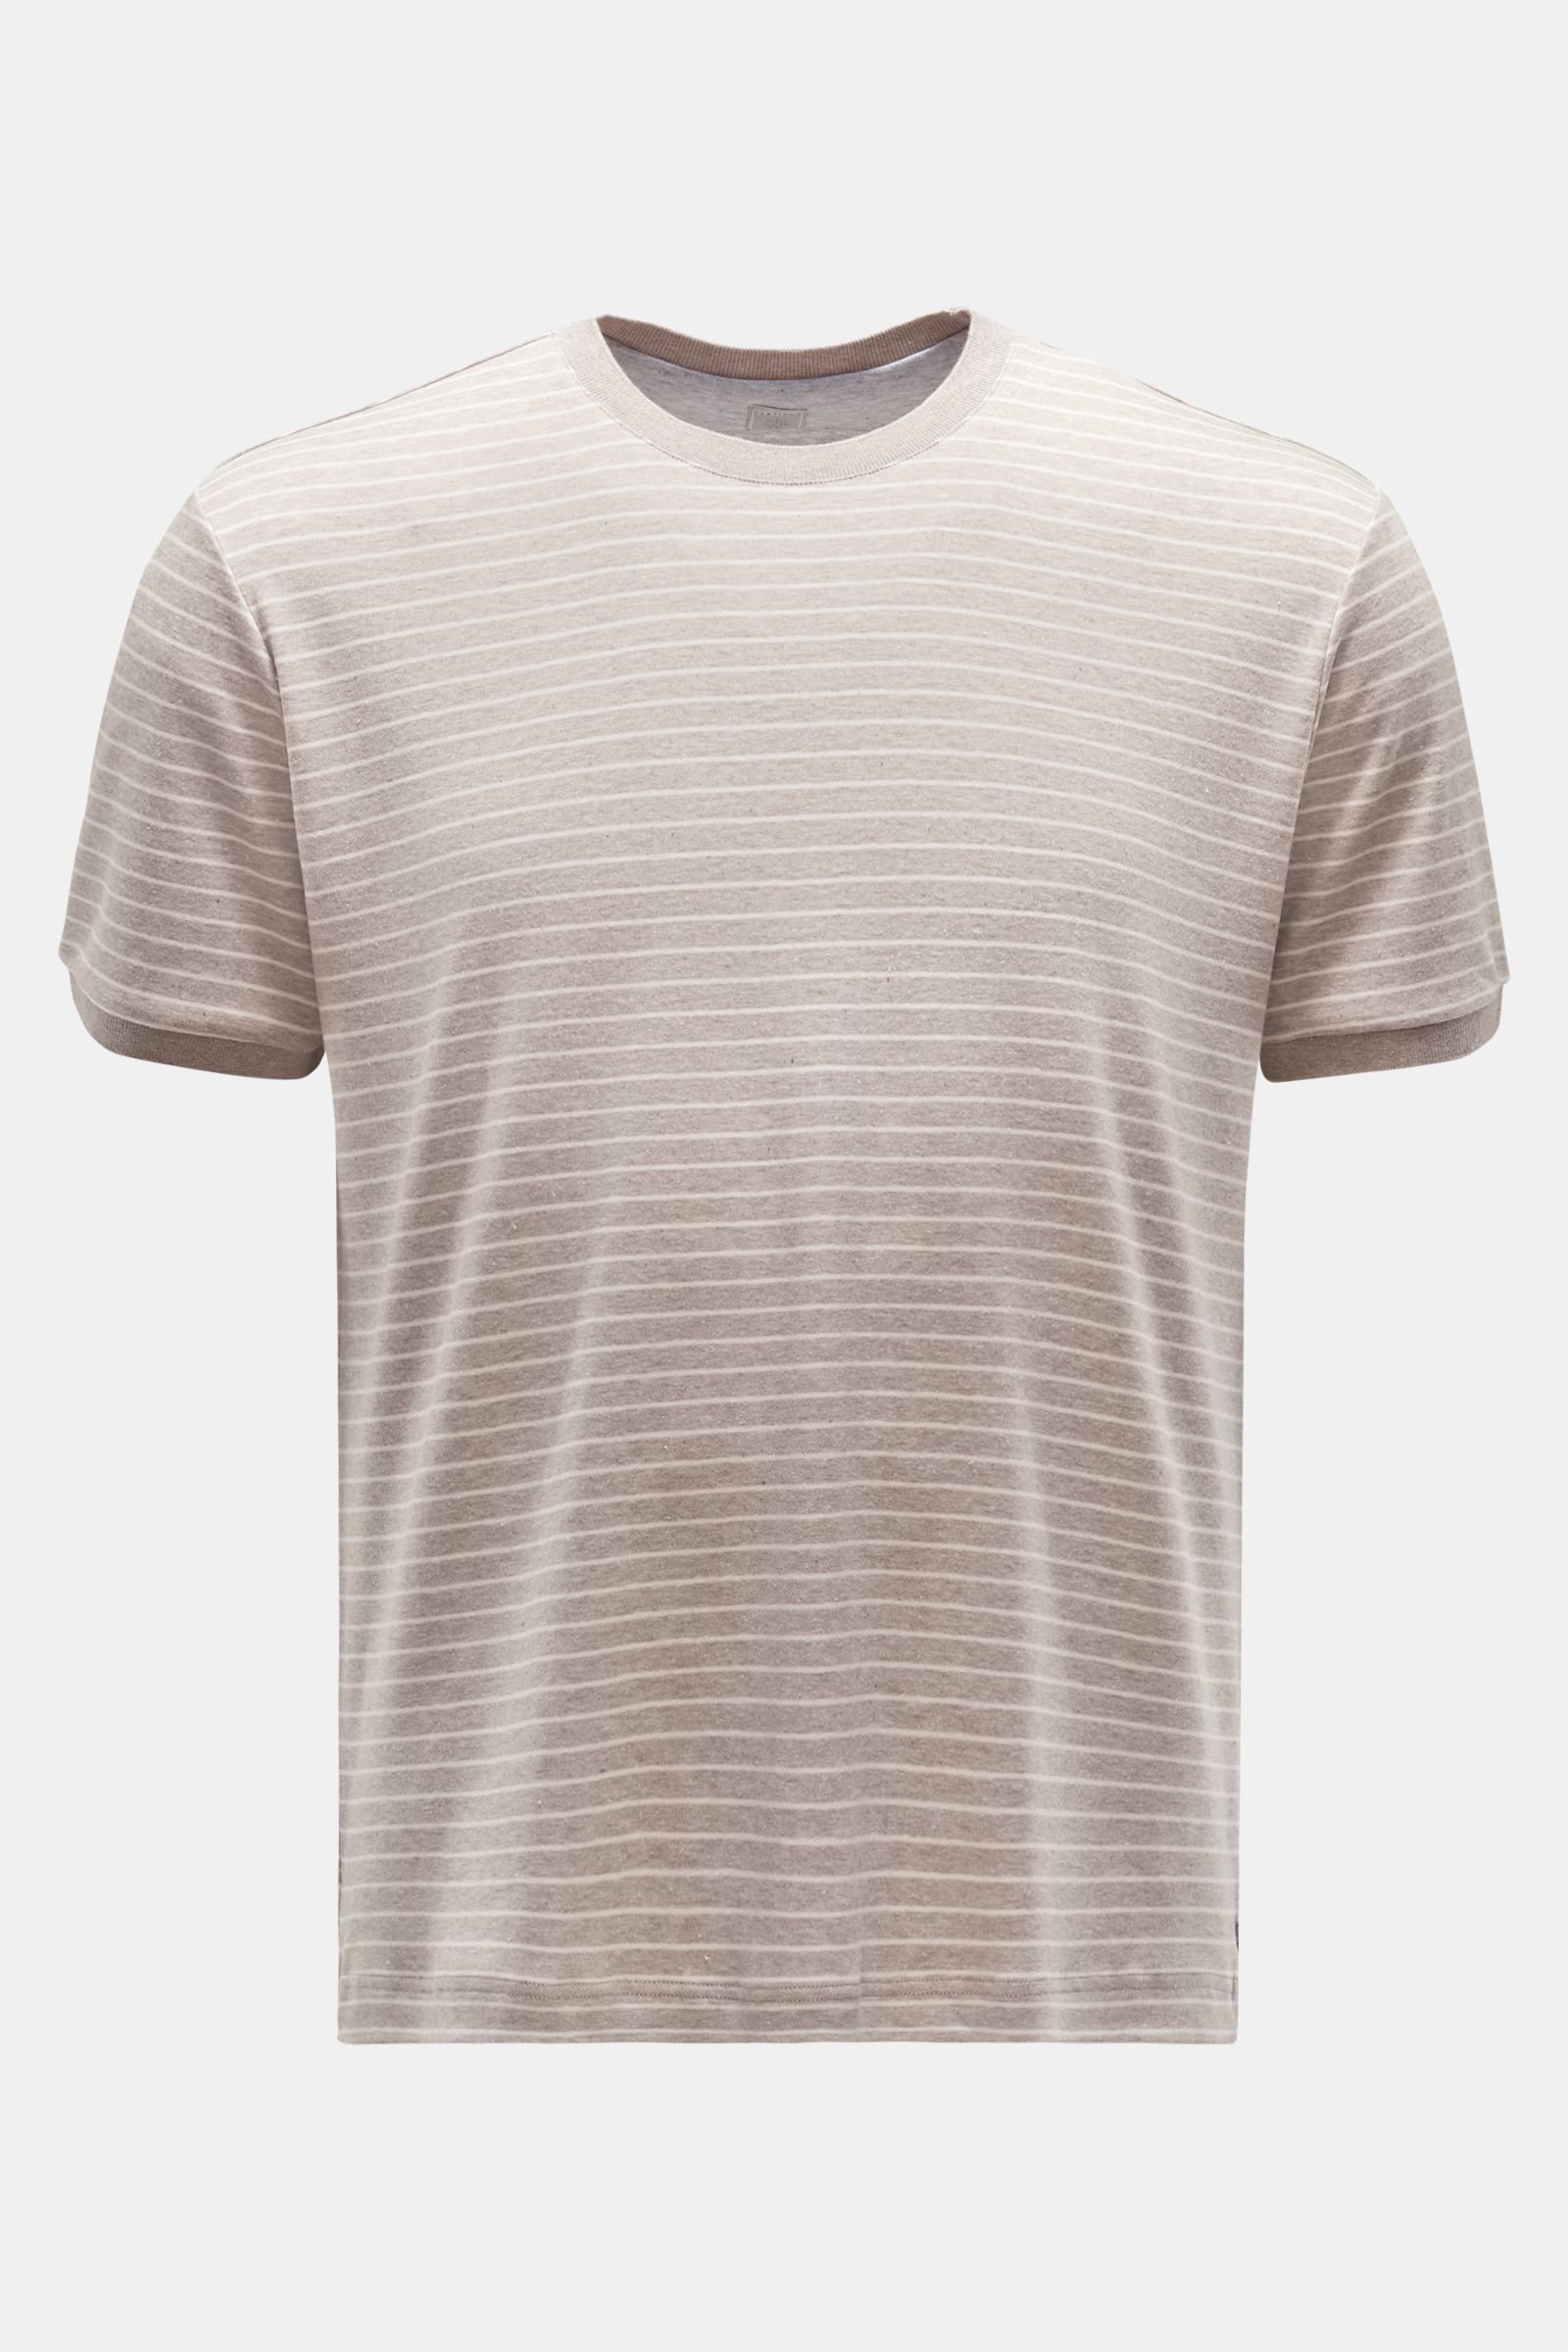 Rundhals-T-Shirt graubraun/weiß gestreift